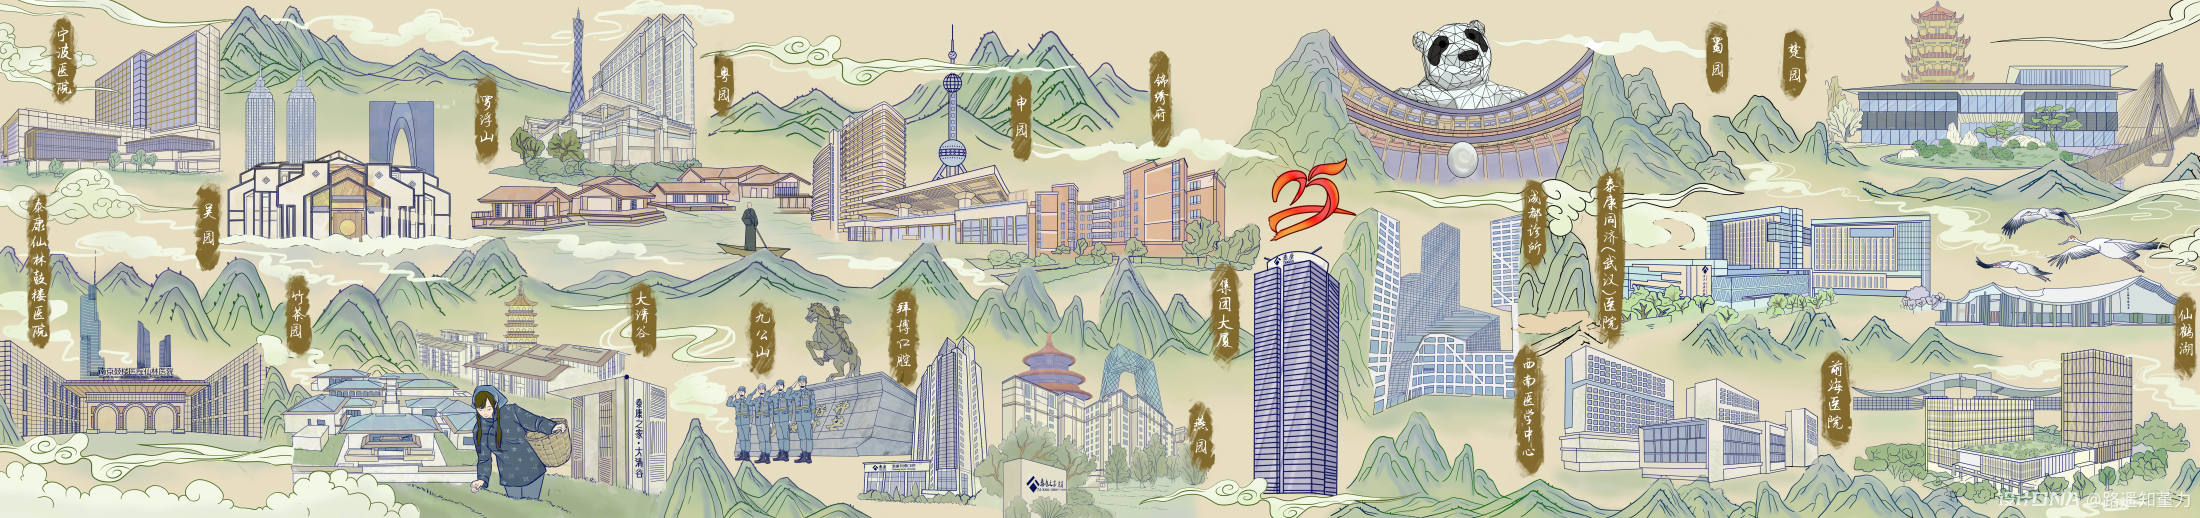 泰康25周年全国园区庆贺插画图 图1